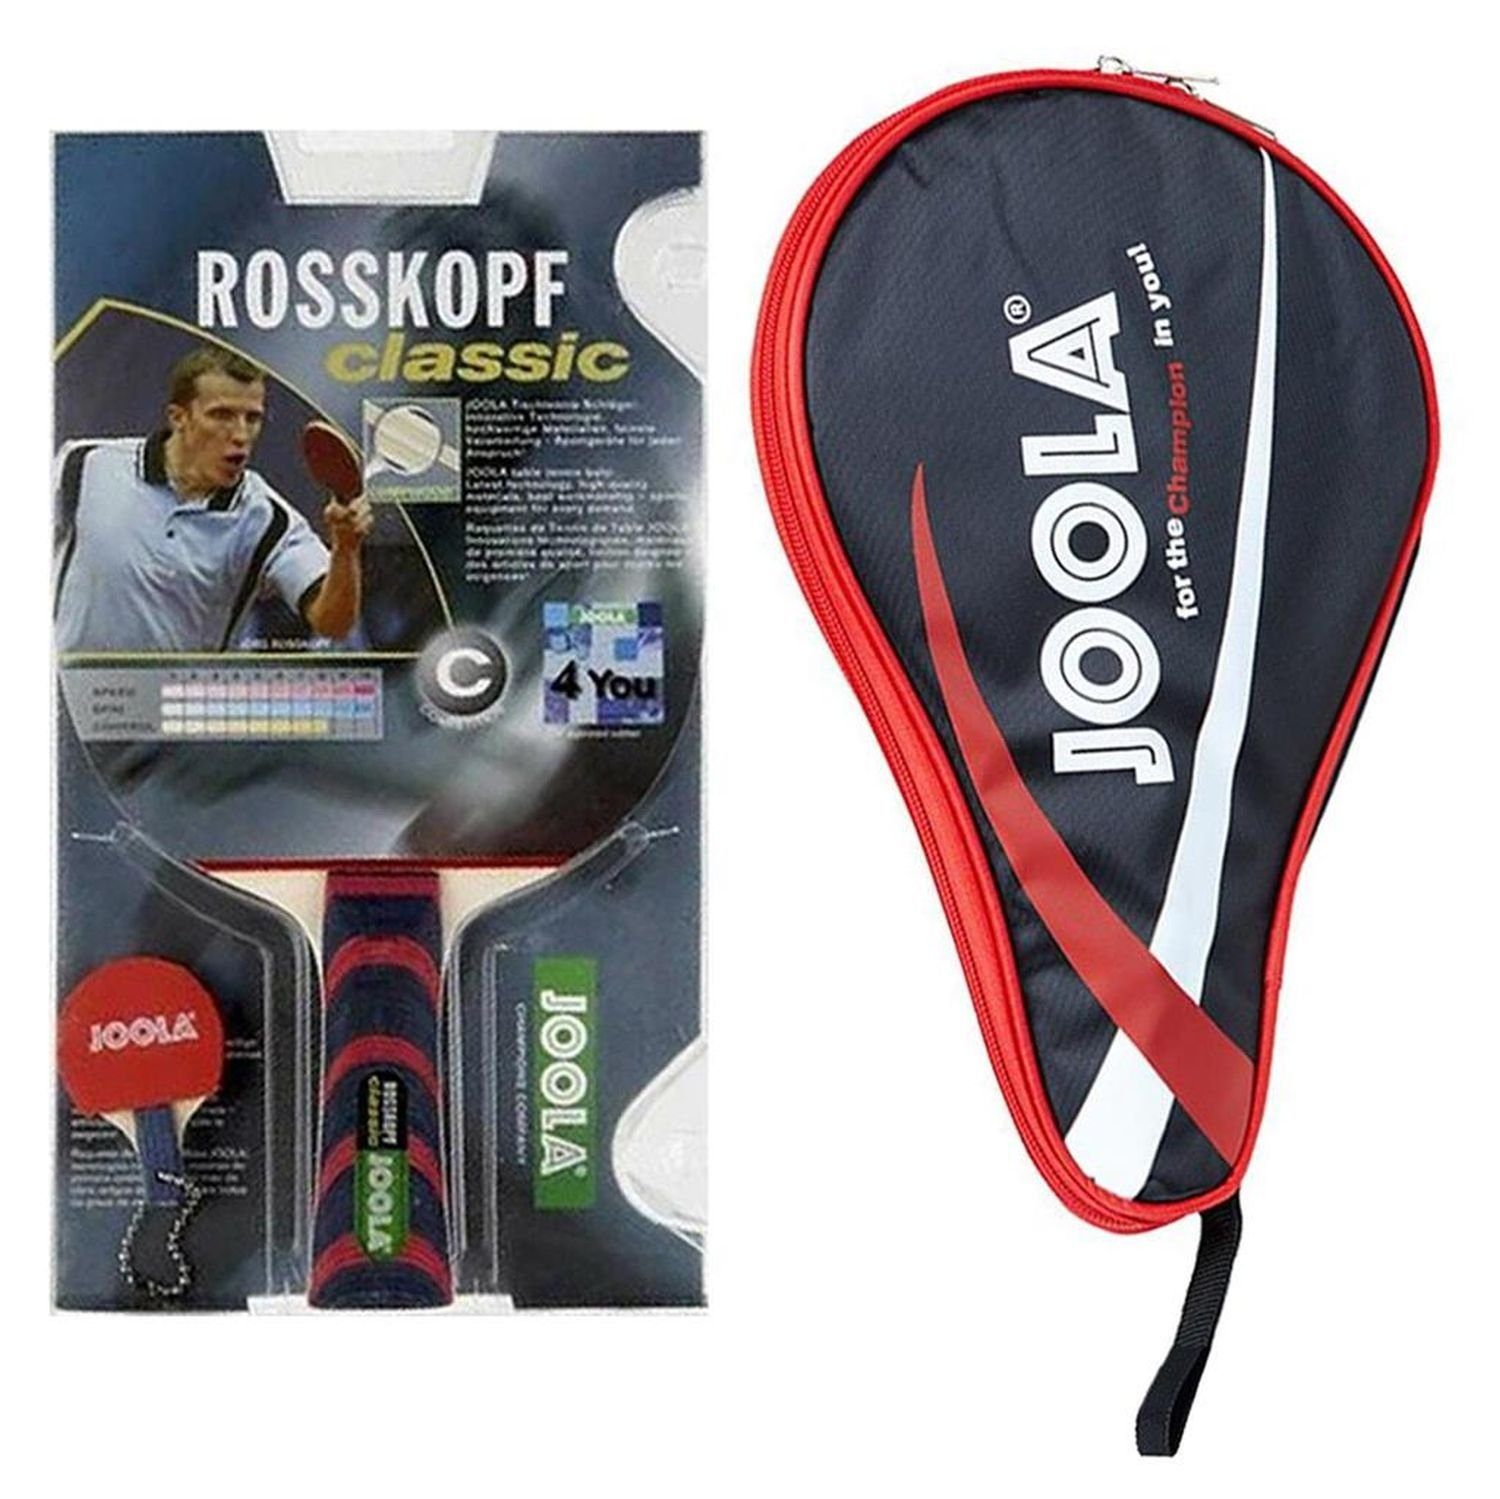 Tennis Table + Racket Tischtennisschläger Pocket Schläger Classic rot, Tischtennis Rosskopf Tischtennisset Joola Bat Set